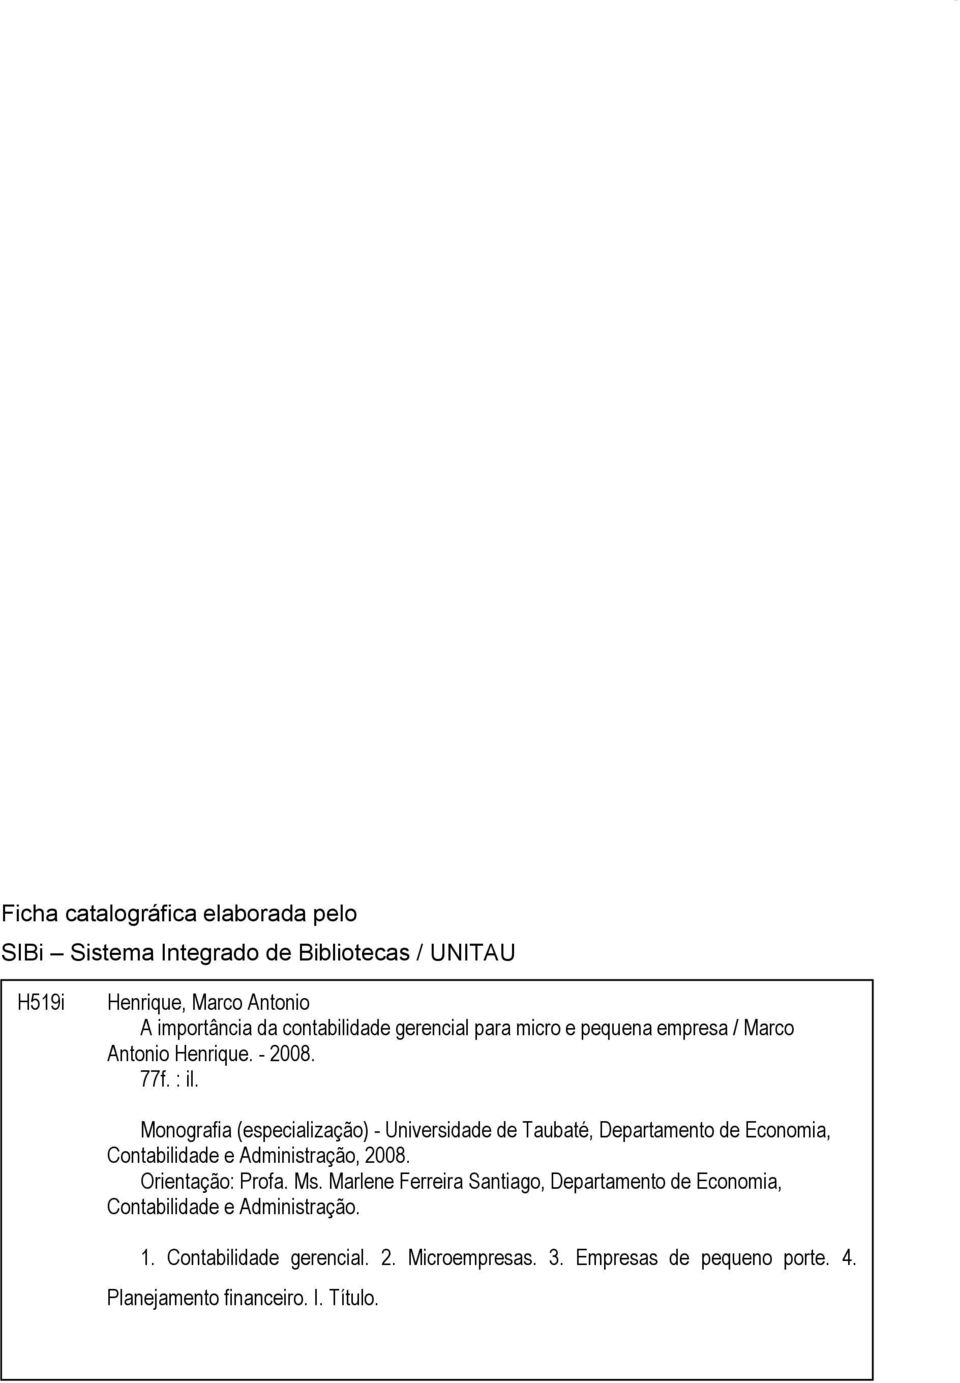 Monografia (especialização) - Universidade de Taubaté, Departamento de Economia, Contabilidade e Administração, 2008. Orientação: Profa. Ms.